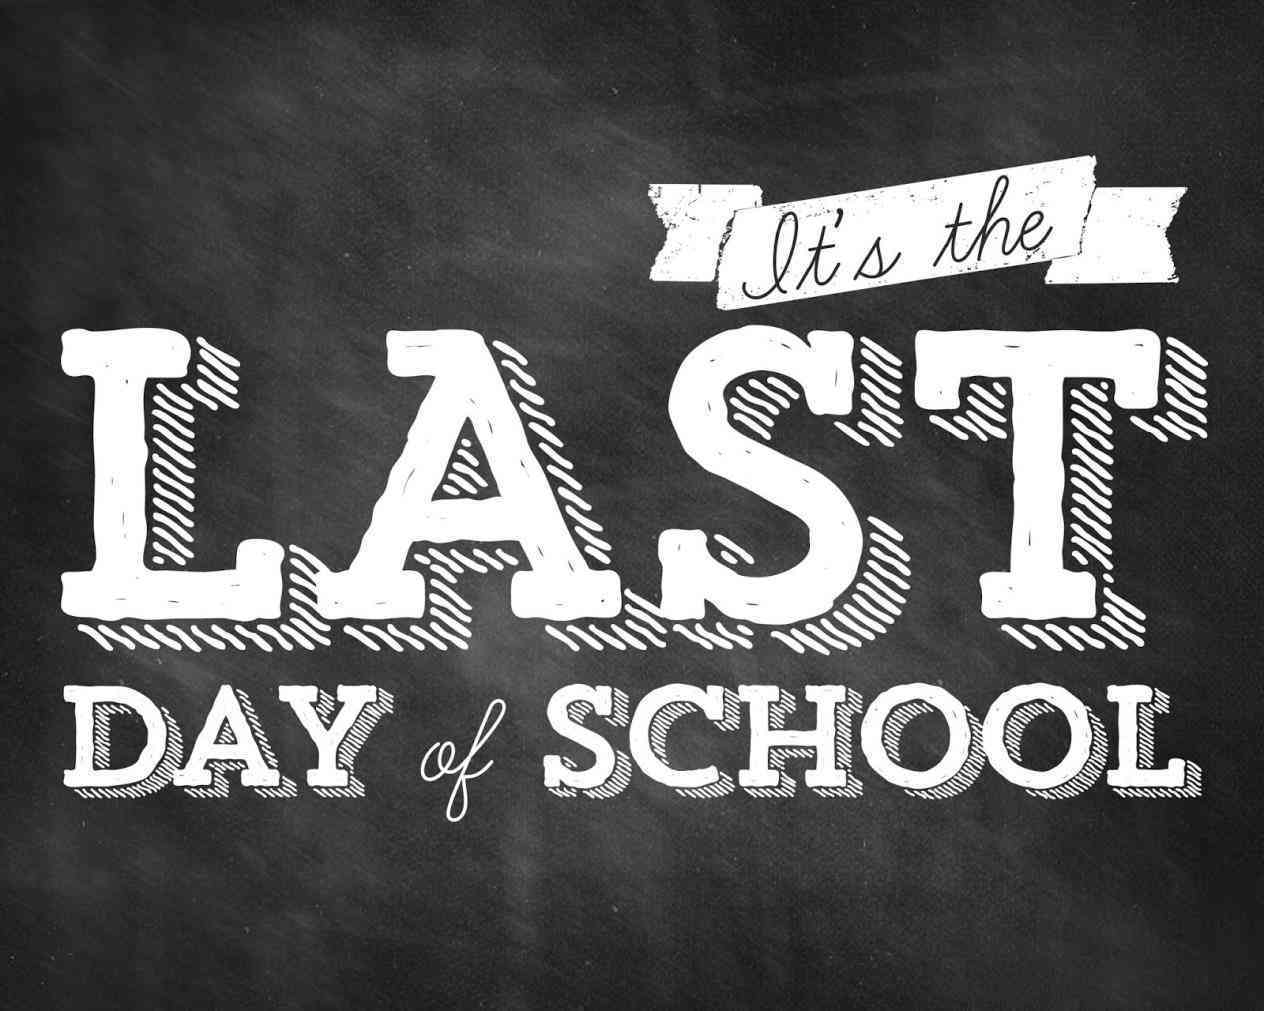 last-day-of-school-ultimo-dia-de-escuela-burke-basic-school